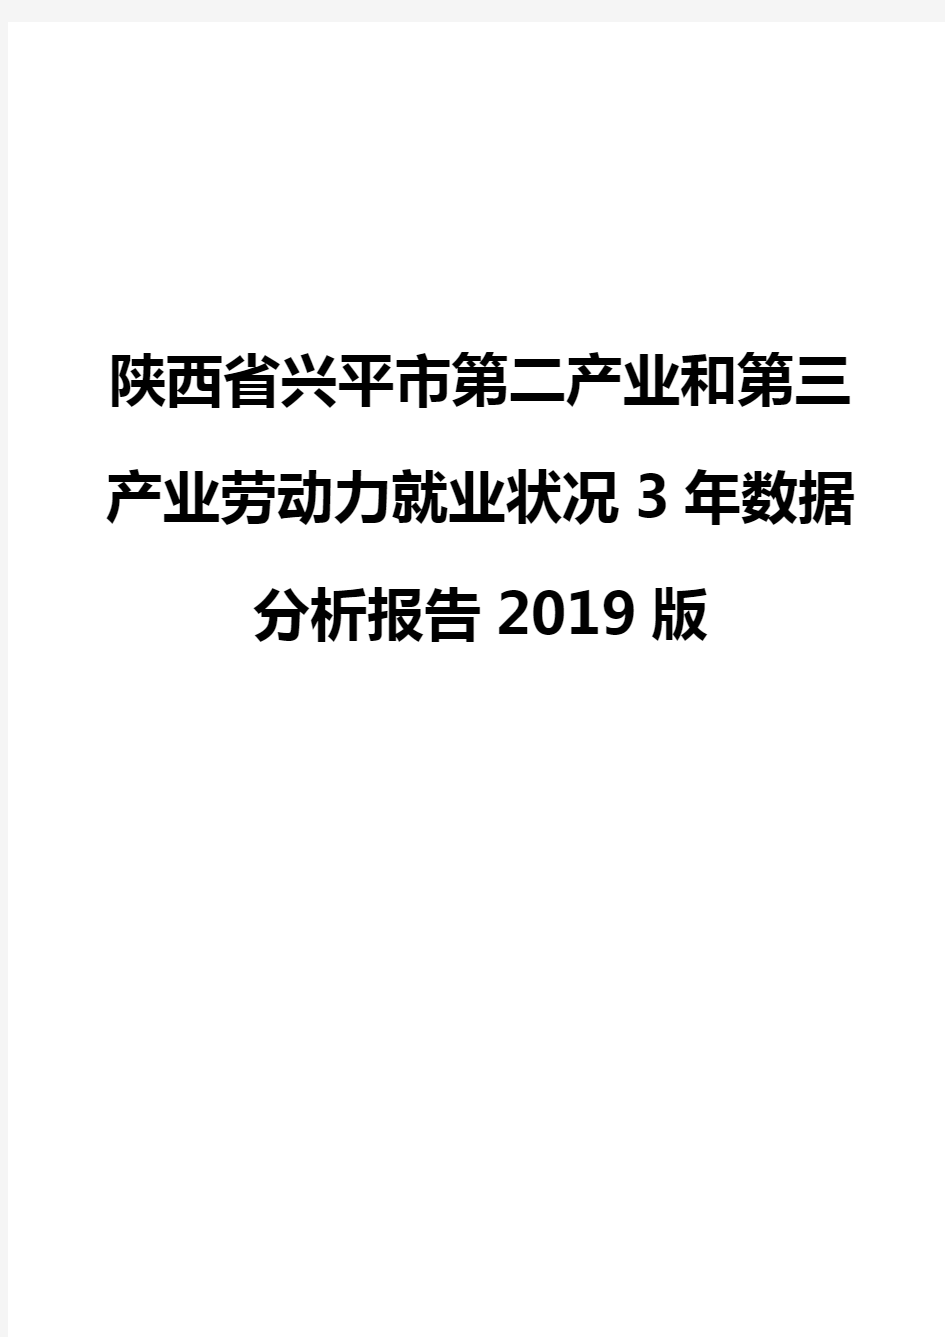 陕西省兴平市第二产业和第三产业劳动力就业状况3年数据分析报告2019版